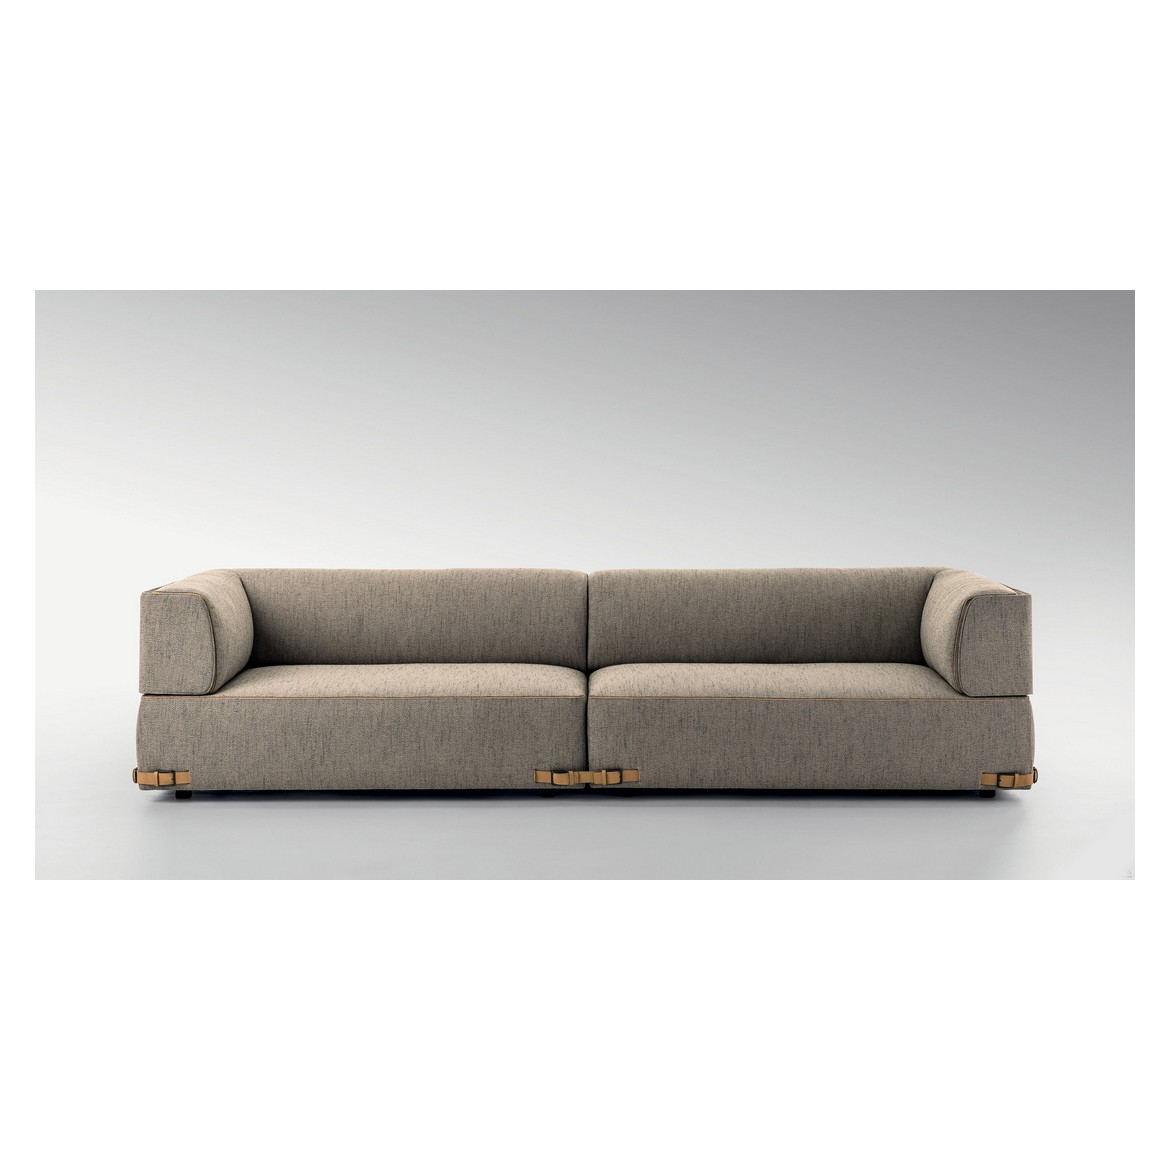 Мебель на заказ / Диван, стиль хай-тек, дизайн Fandy Casa, модель Soho2 Sofa